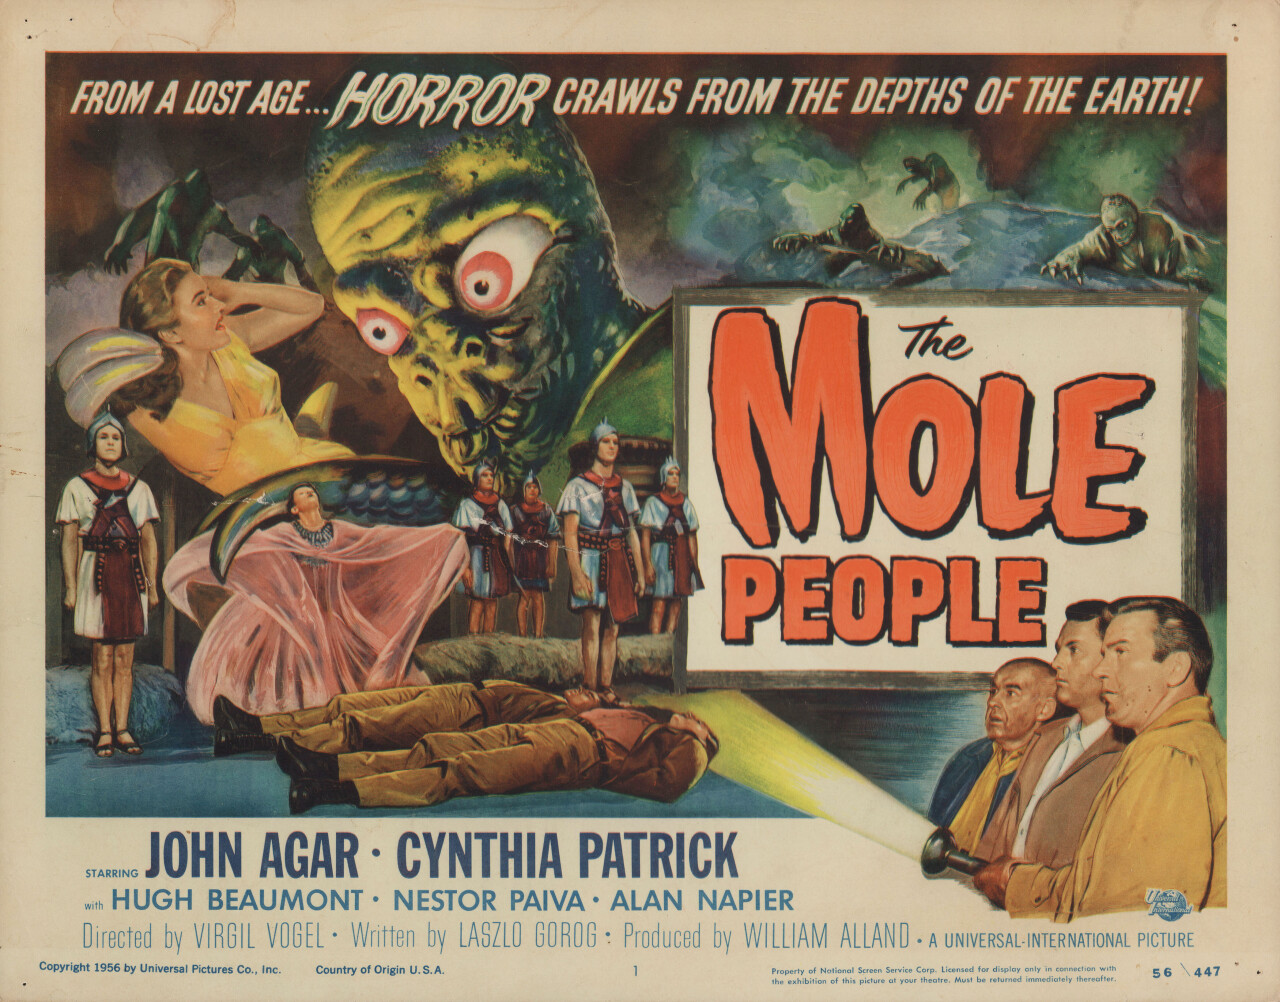 Подземное население (The Mole People, 1956), режиссёр Вирджил В. Фогель, американский постер к фильму (ужасы, 1956 год)